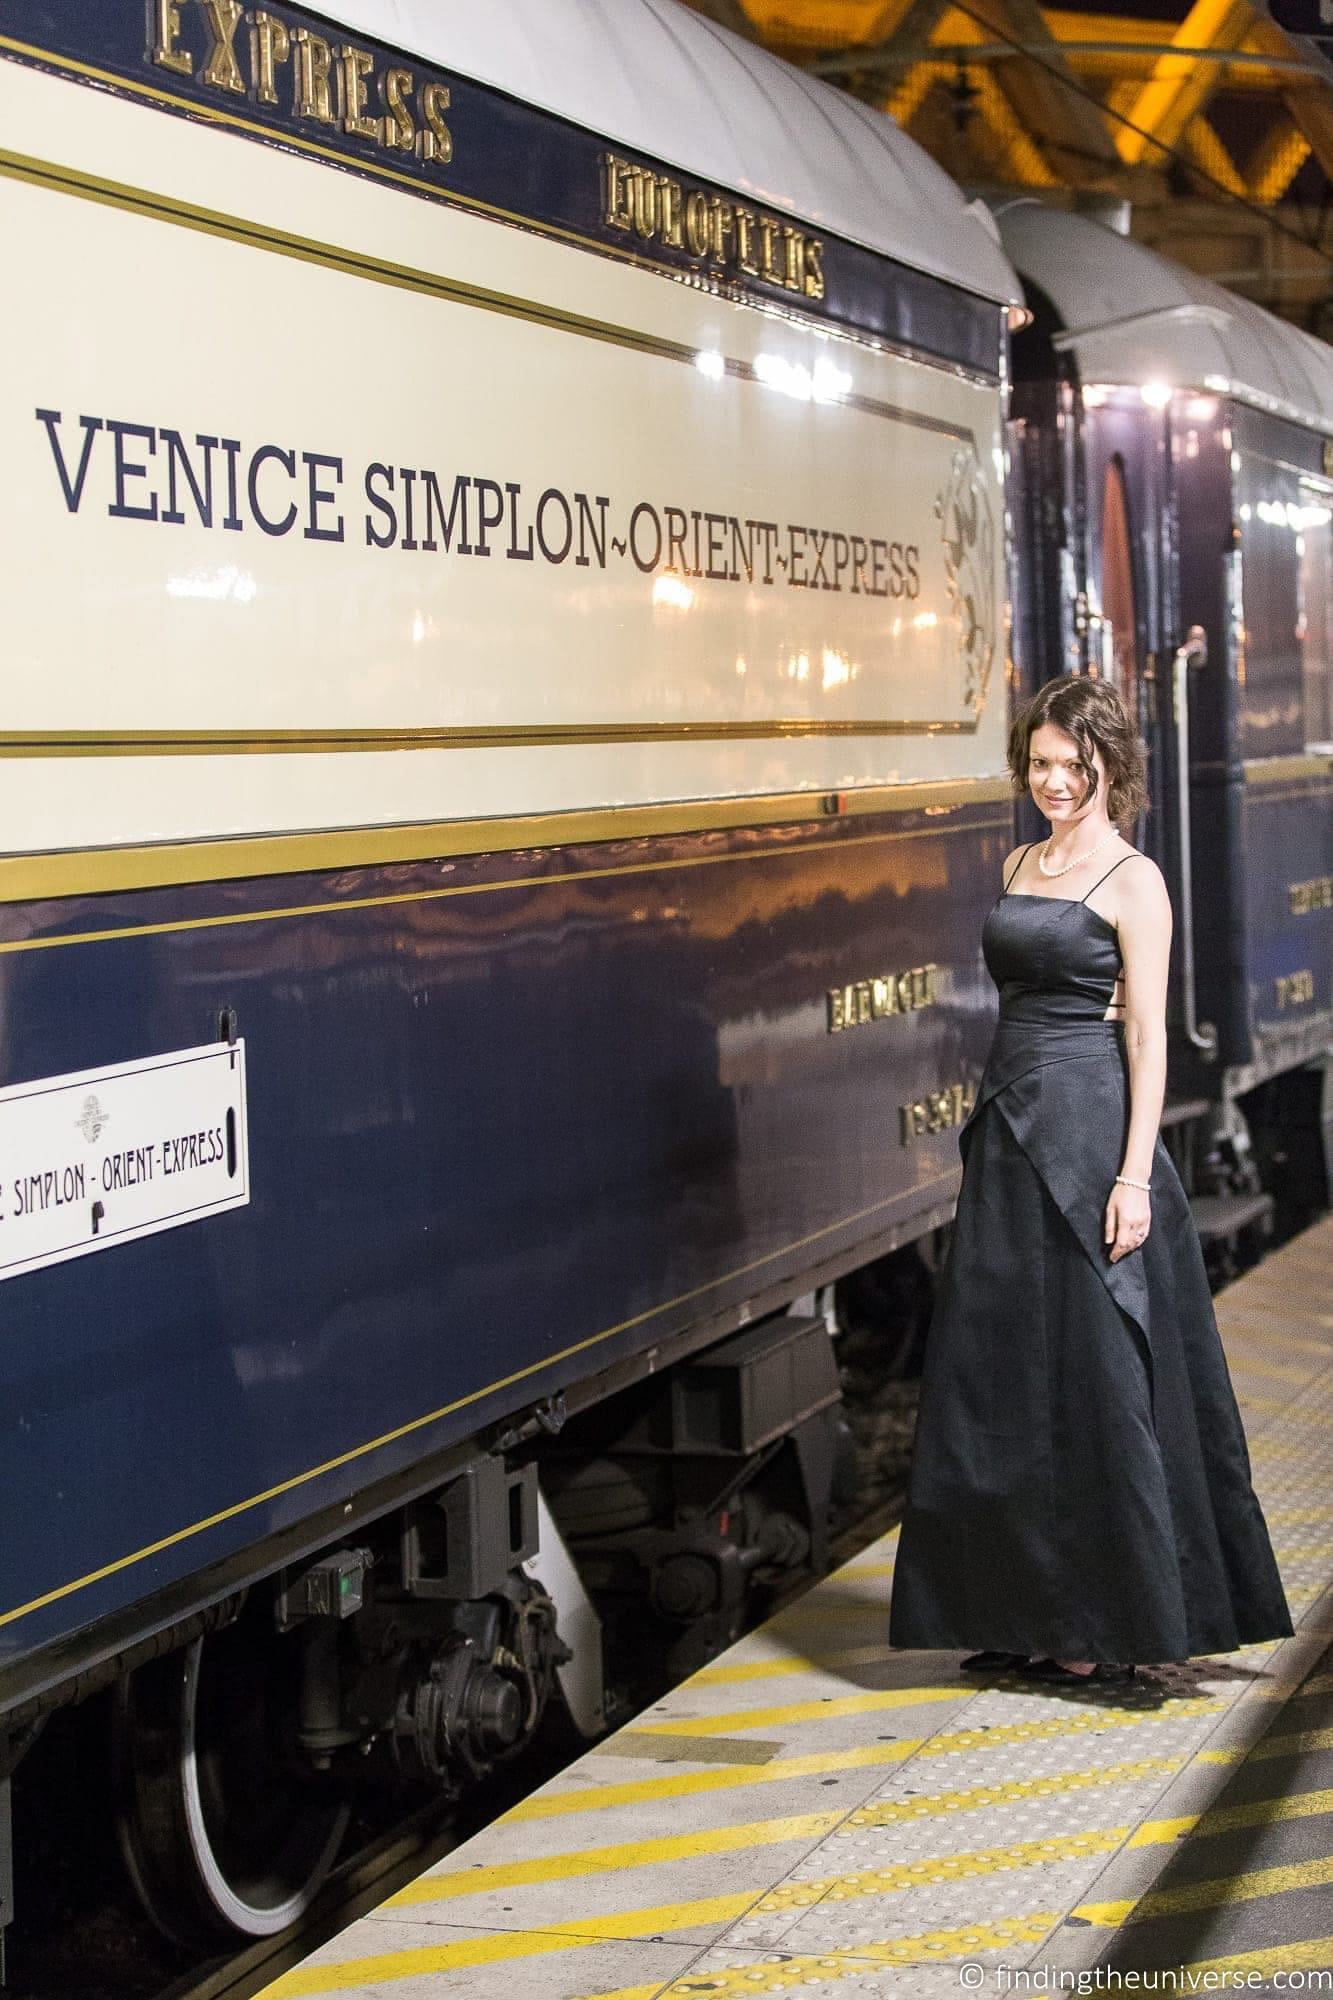 Venice Simplon Orient Express - Global Traveler